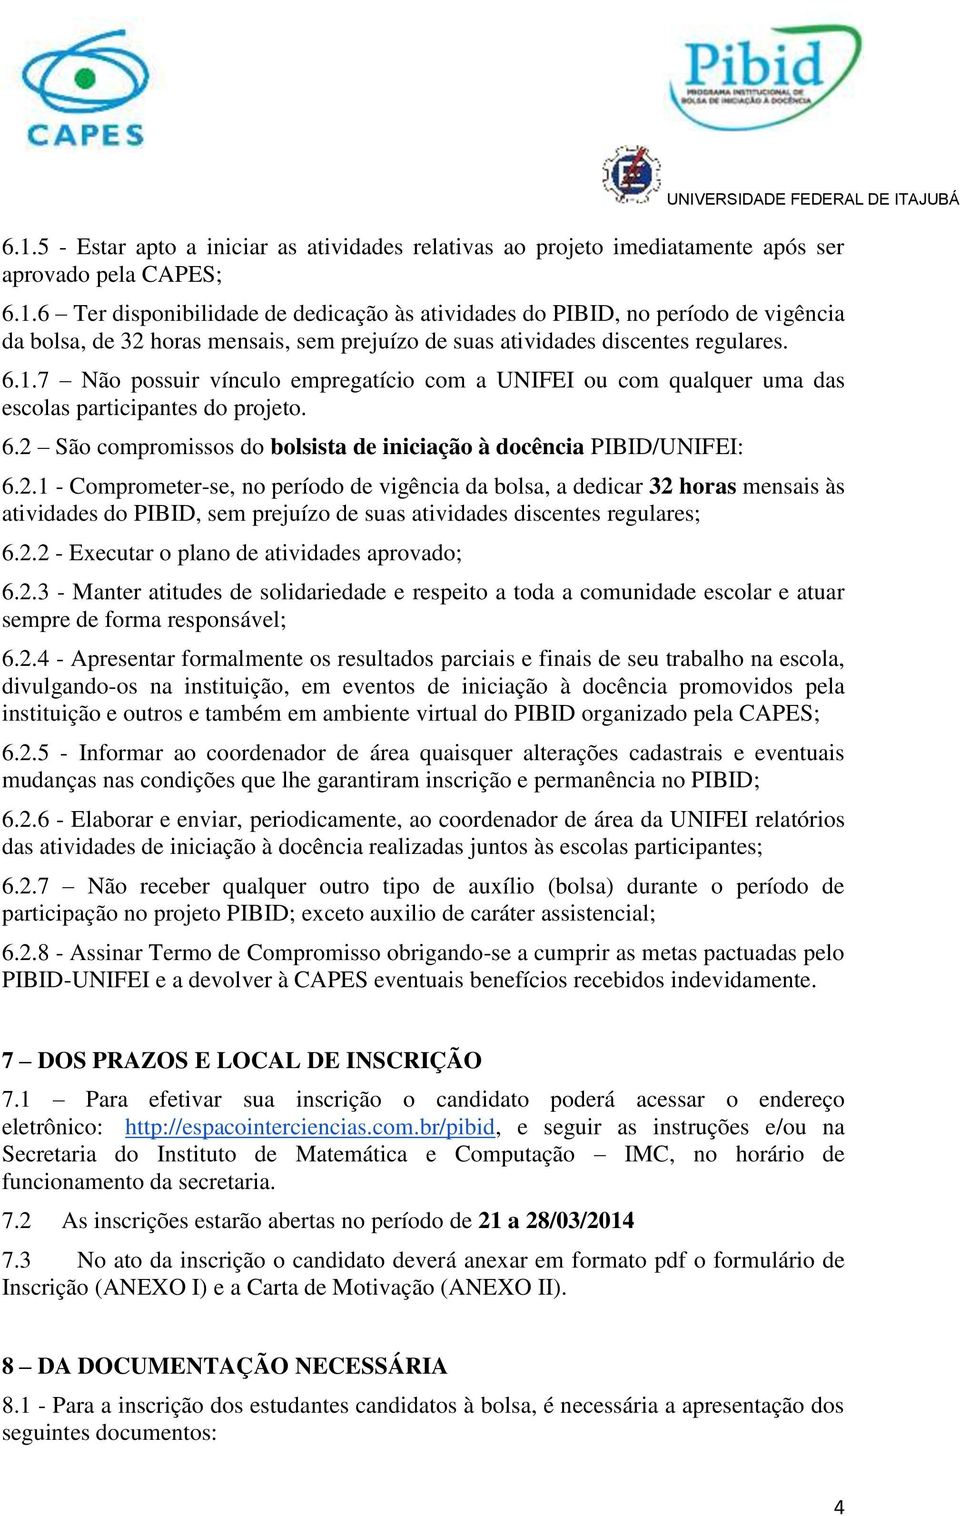 São compromissos do bolsista de iniciação à docência PIBID/UNIFEI: 6.2.